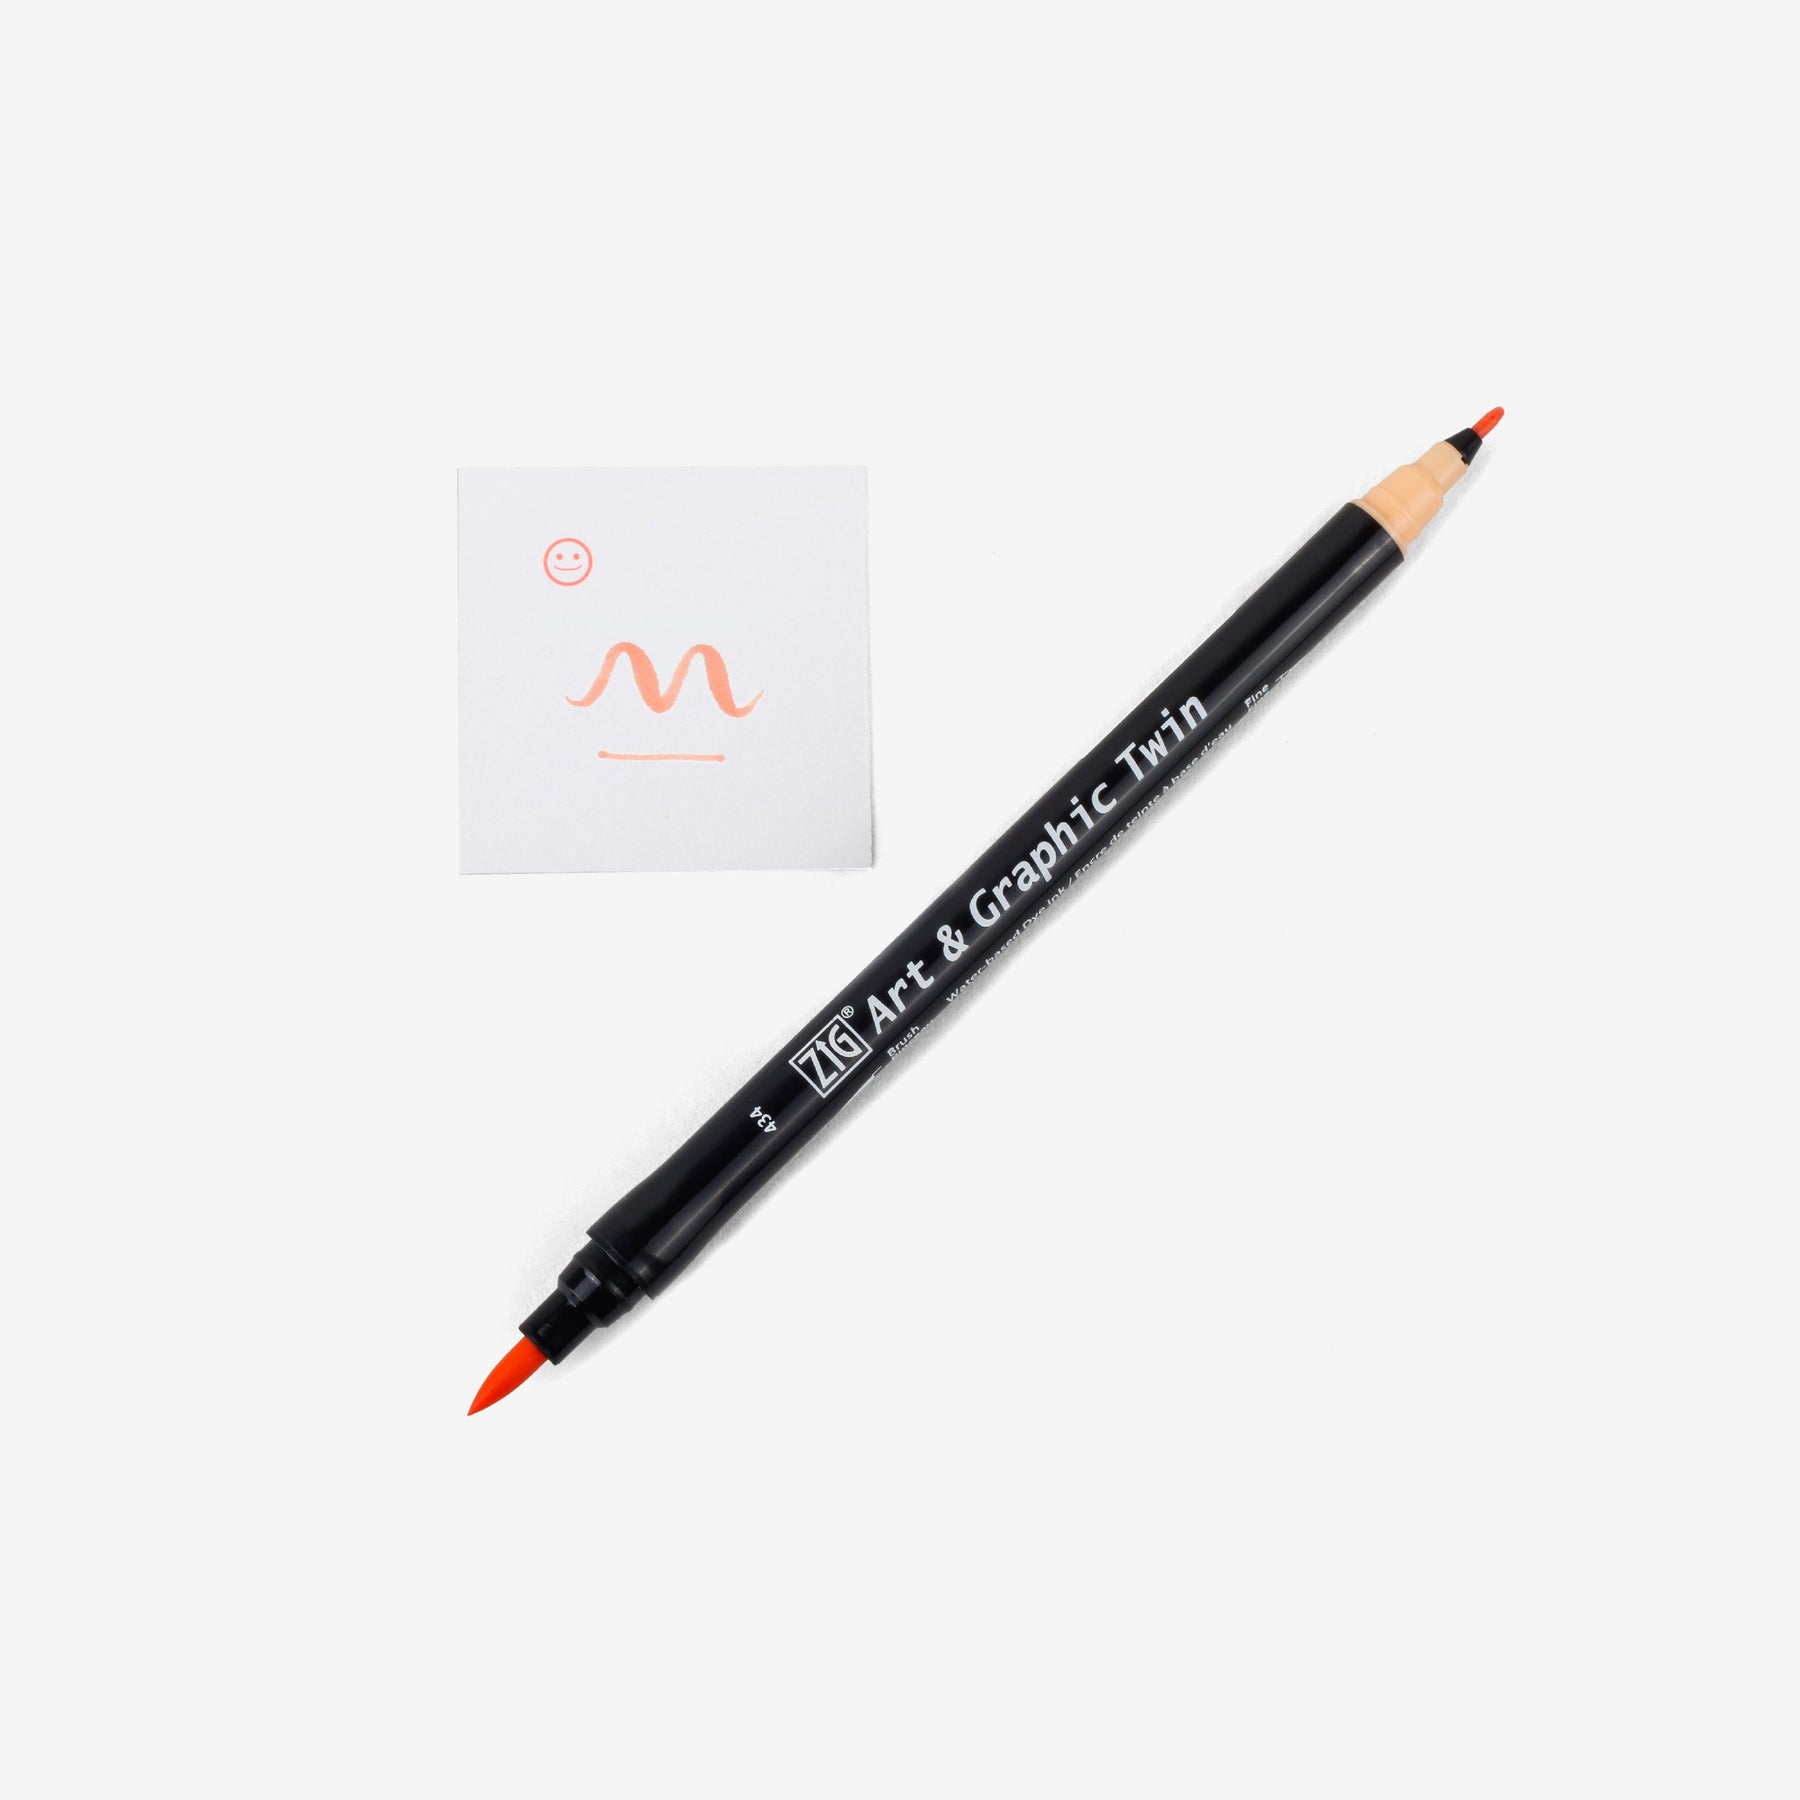 Kuretake Art & Graphic Twin Pen - Apricot